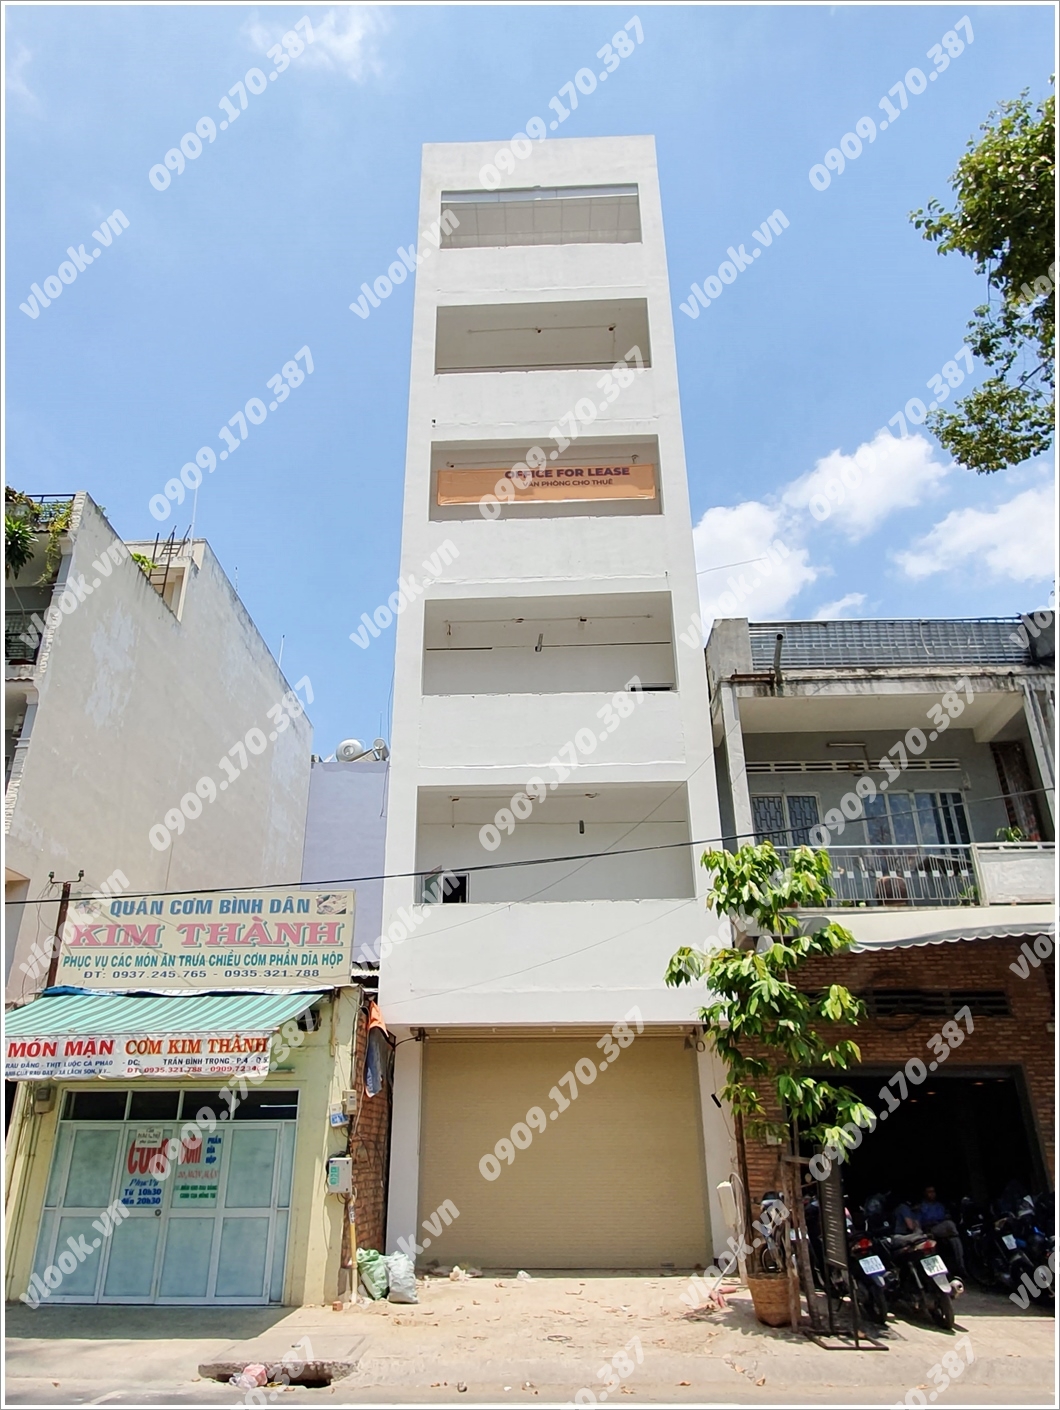 Mặt trước cao ốc cho thuê văn phòng Building 261, Trần Bình Trọng, Quận 5, TPHCM - vlook.vn